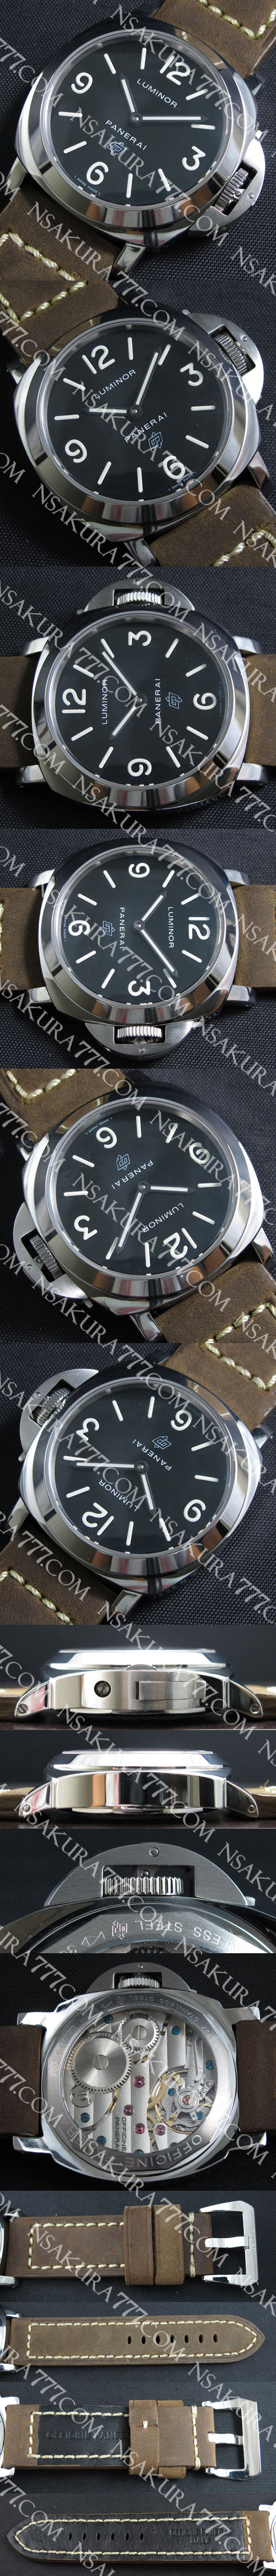 パネライ ルミノール マリーナ PAM000 メンズ腕時計【送料無料（全国一律）】